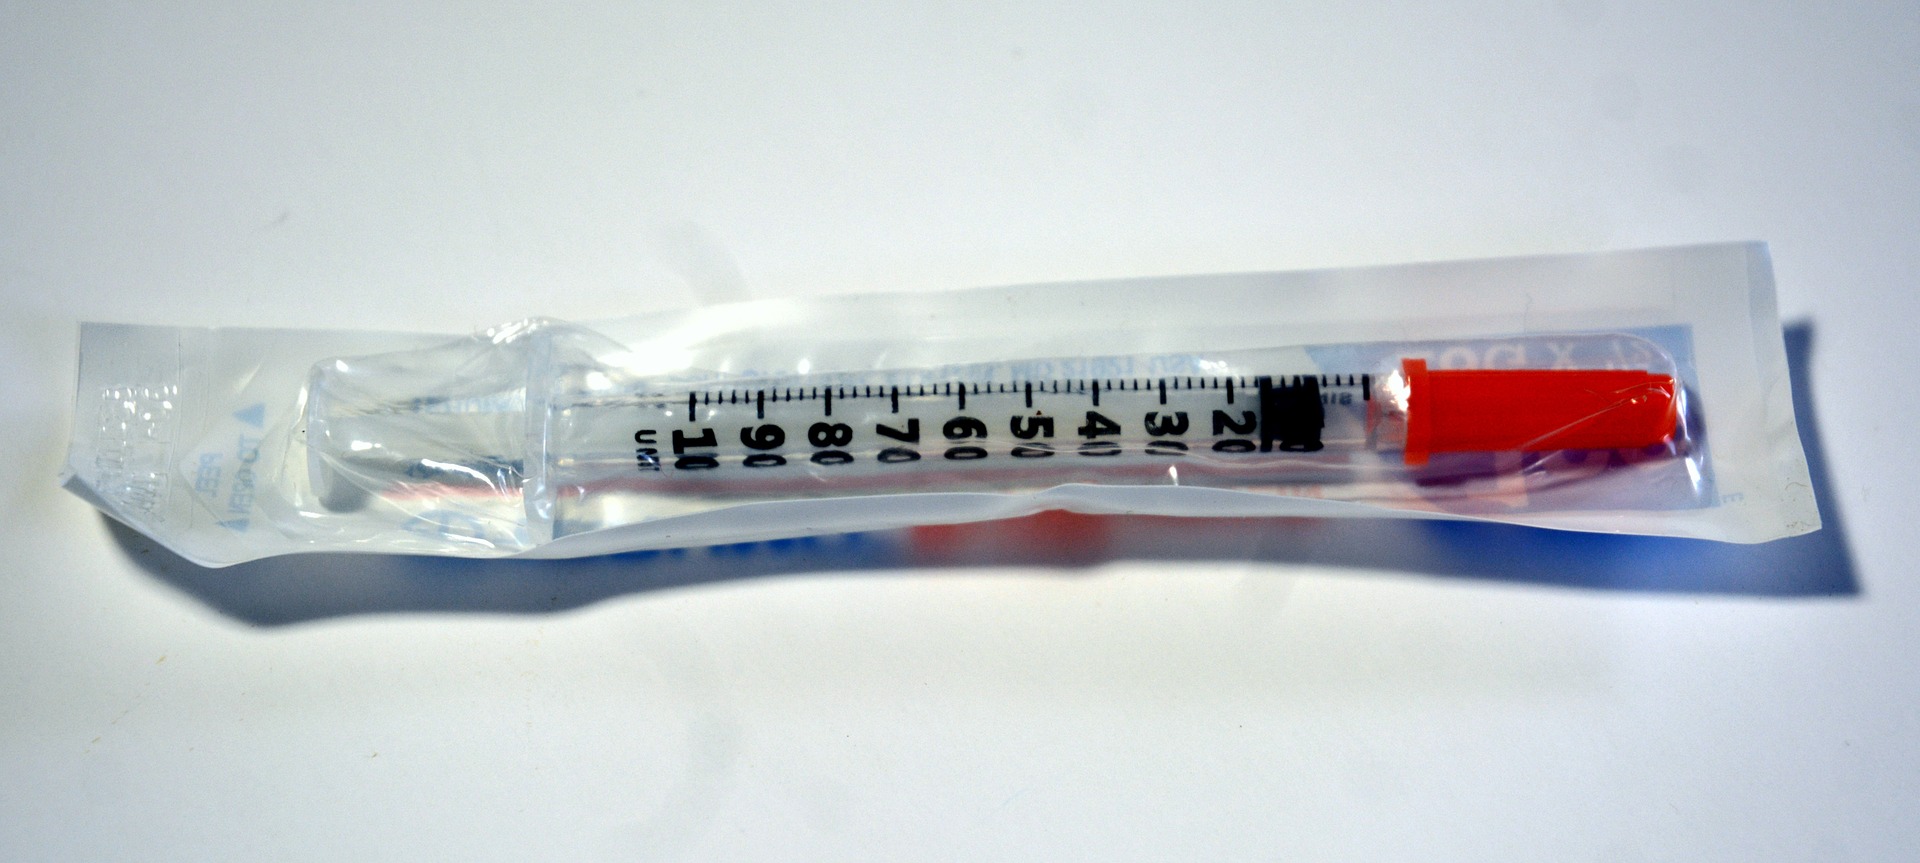 syringe-1271276_1920